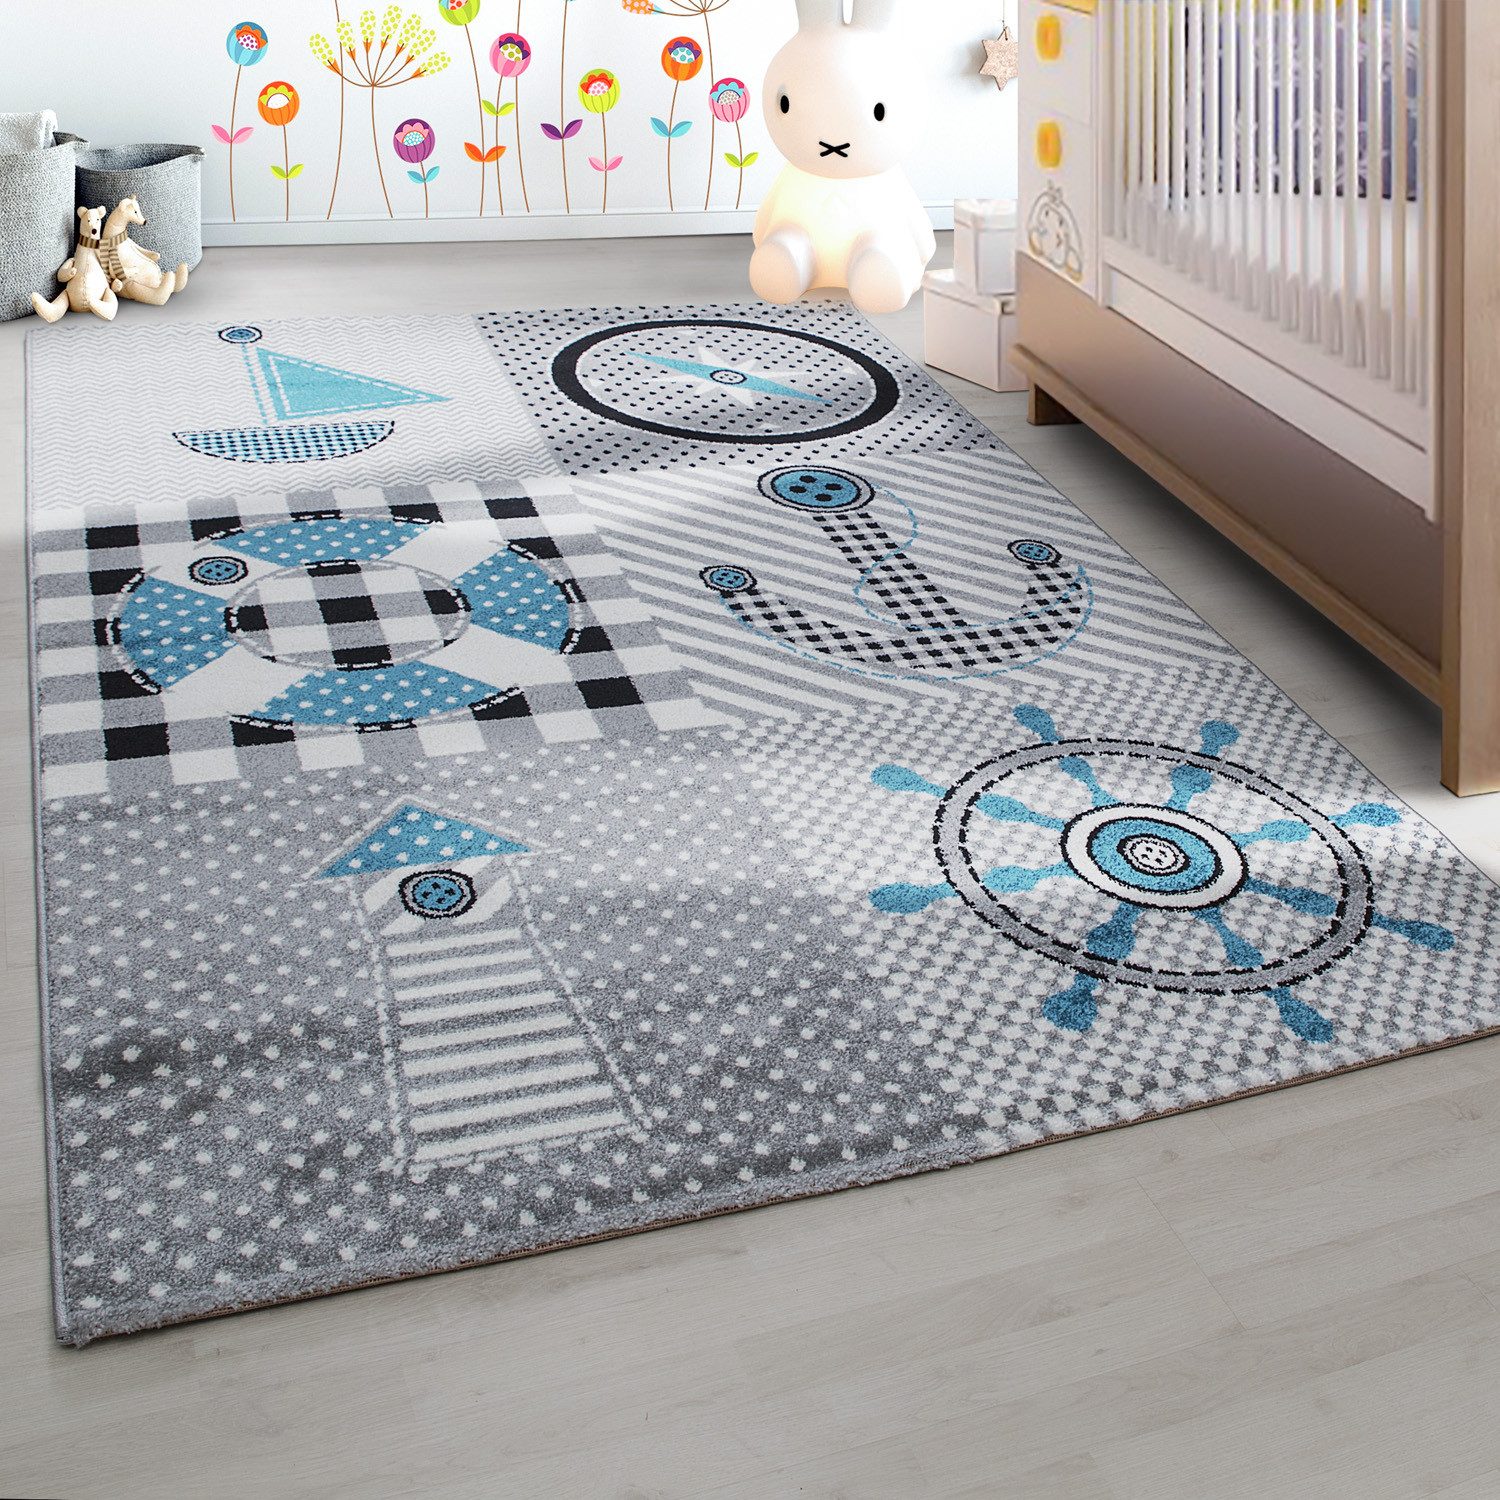 Kinderteppich Piraten-Design, Carpettex, Läufer, Höhe: 11 mm, Kinderteppich Pirat-Design Grau Baby Teppich Kinderzimmer Pflegeleicht